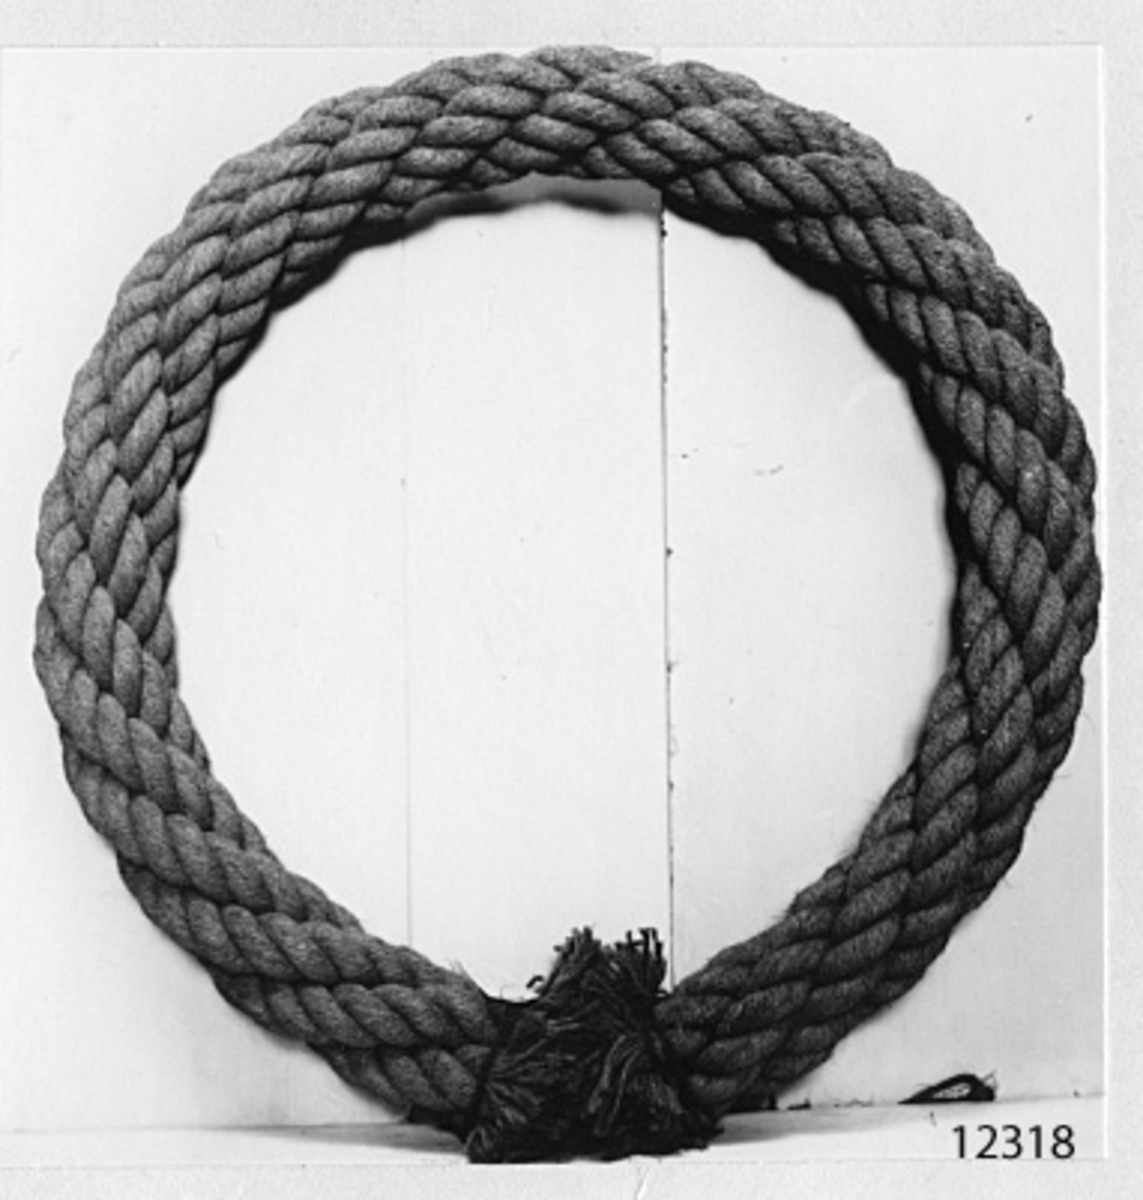 Kabel, 4-slagen, av kokos. Från 1900-talet.